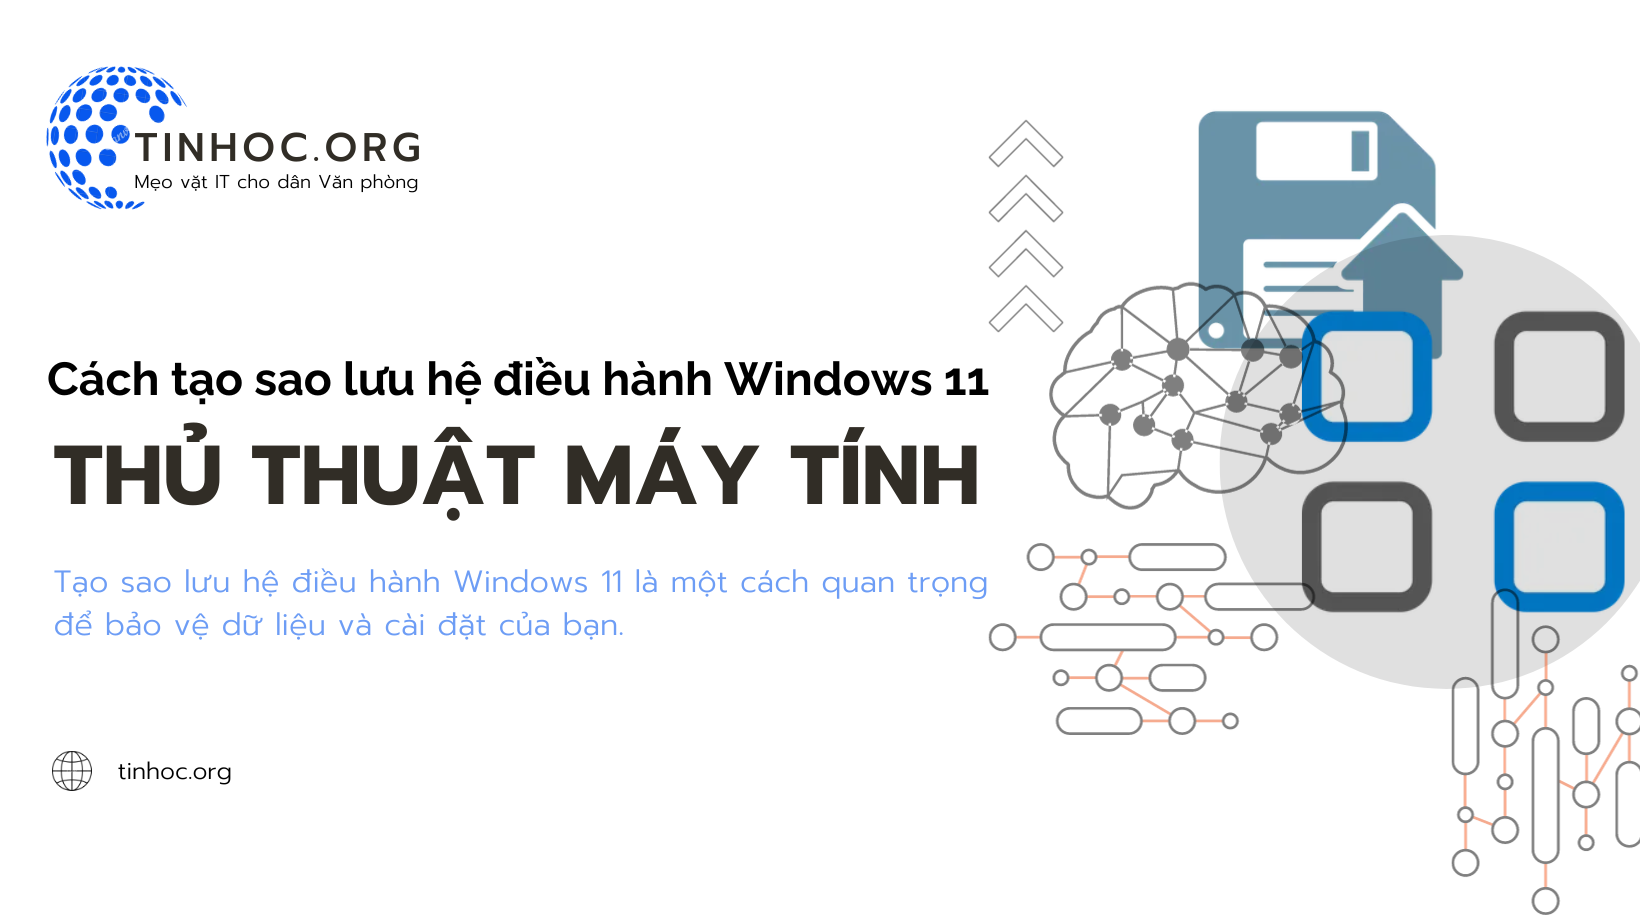 Bài viết hướng dẫn cách tạo sao lưu hệ điều hành Windows 11 bằng công cụ tích hợp và phần mềm của bên thứ ba.